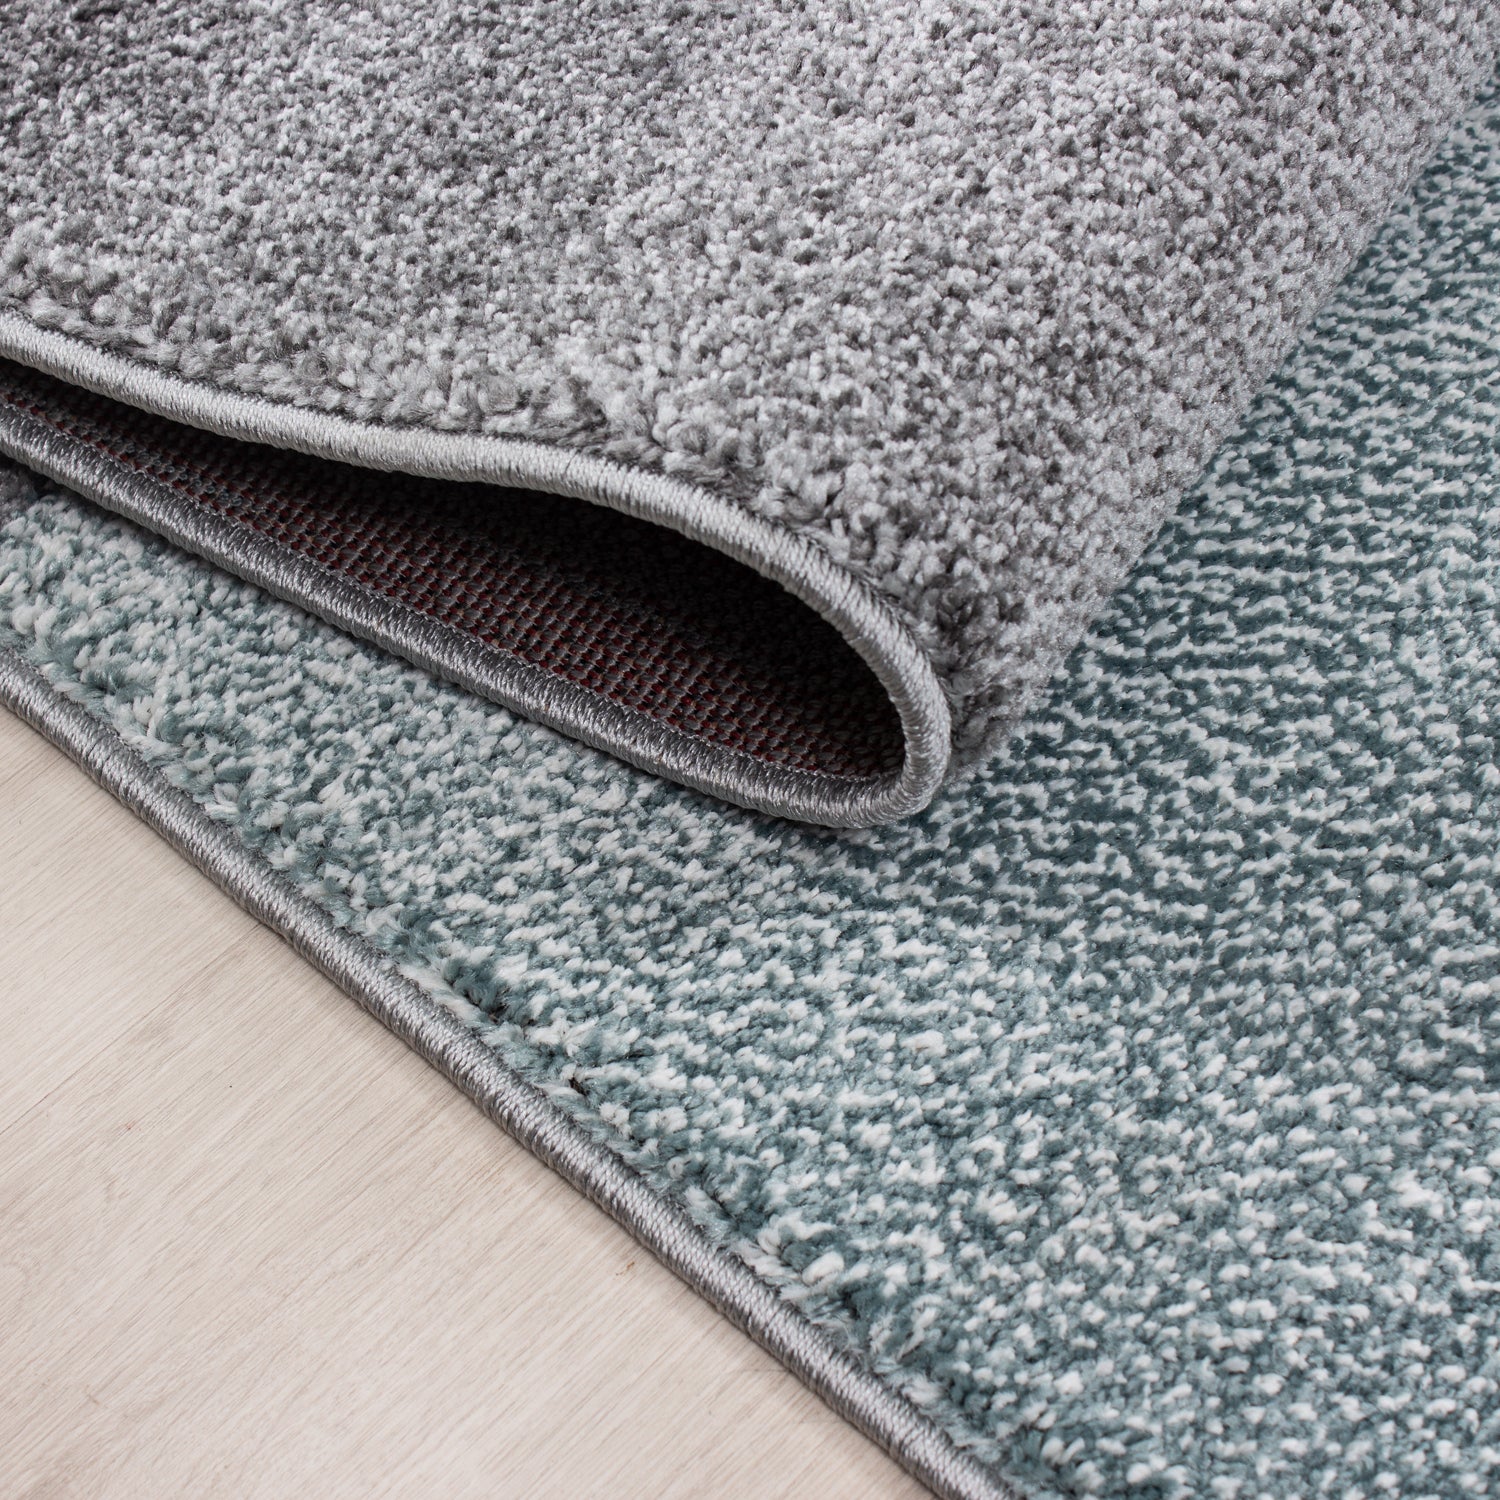 Kurzflor Design Teppich Rechteck Karo Muster Wohnzimmerteppich Grau Blau Meliert